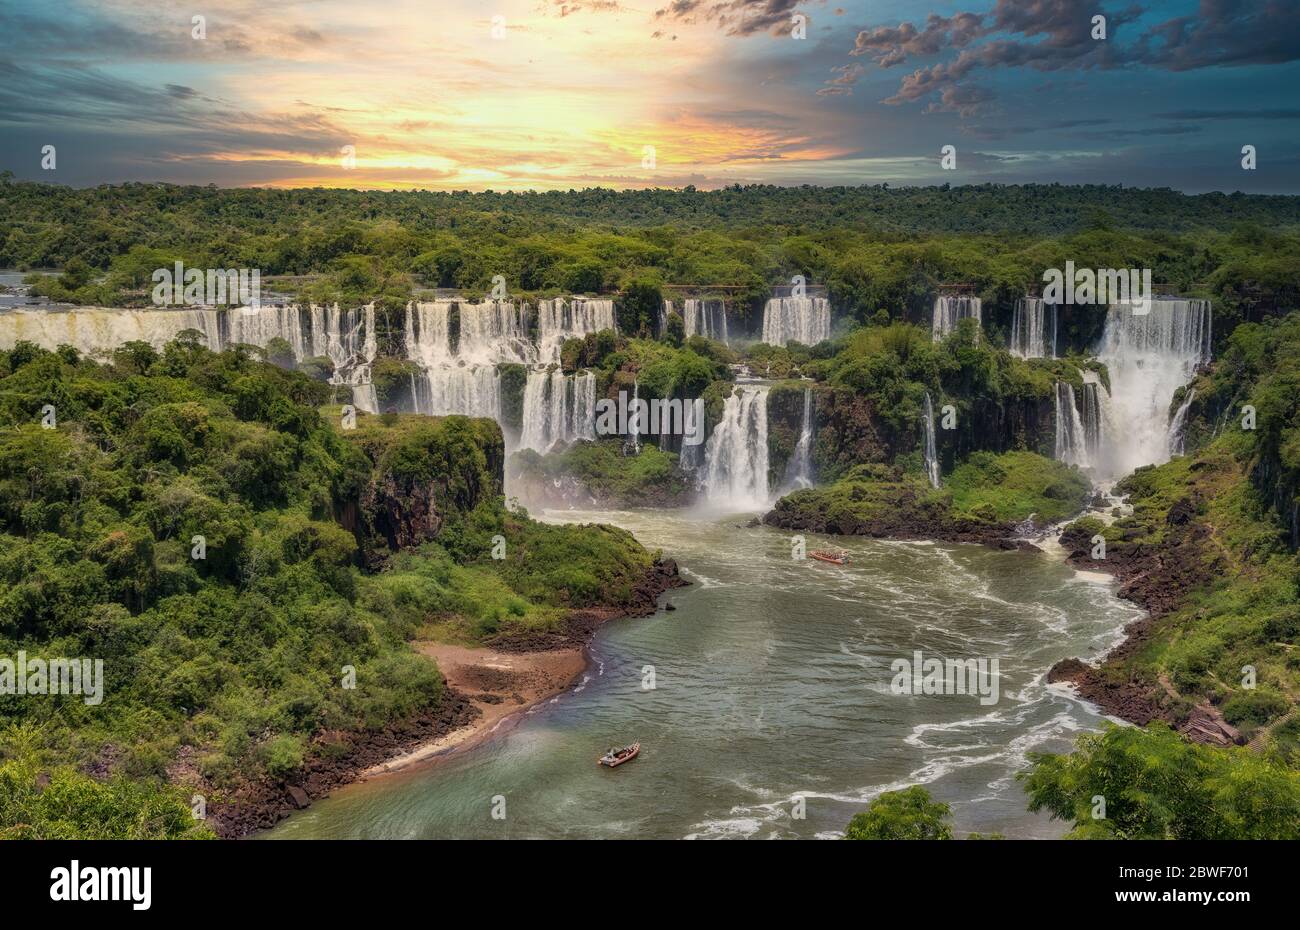 Les chutes d'Iguaçu du côté argentin. Photographié depuis le côté brésilien. Banque D'Images